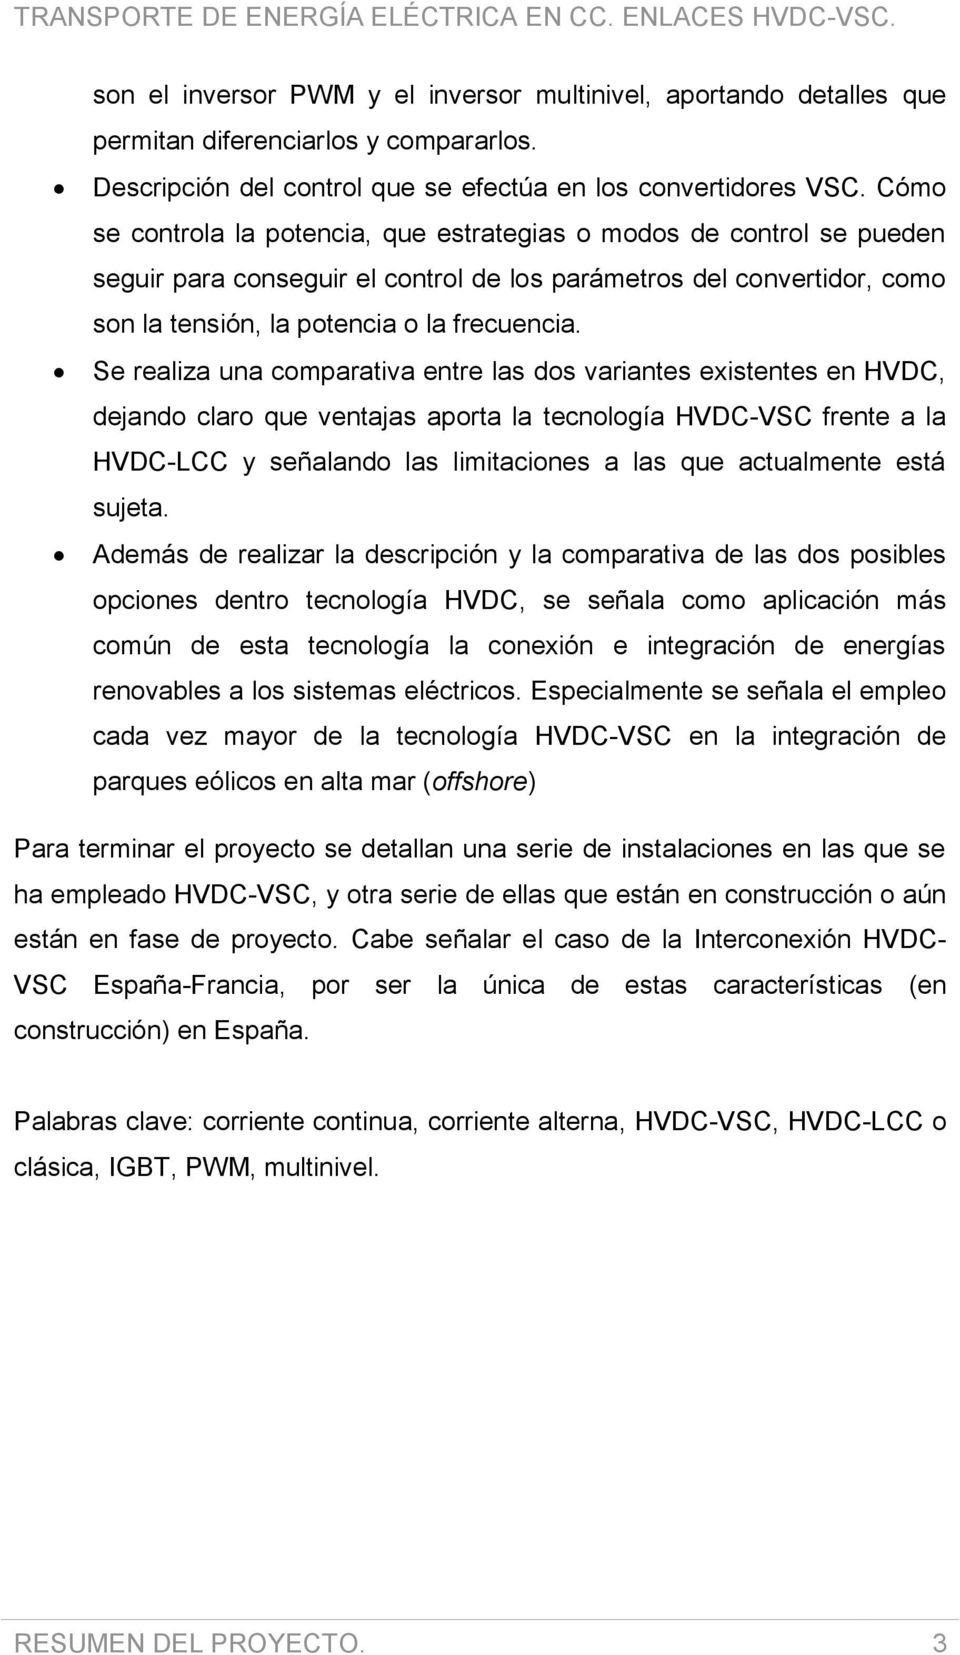 Se realiza una comparativa entre las dos variantes existentes en HVDC, dejando claro que ventajas aporta la tecnología HVDC-VSC frente a la HVDC-LCC y señalando las limitaciones a las que actualmente